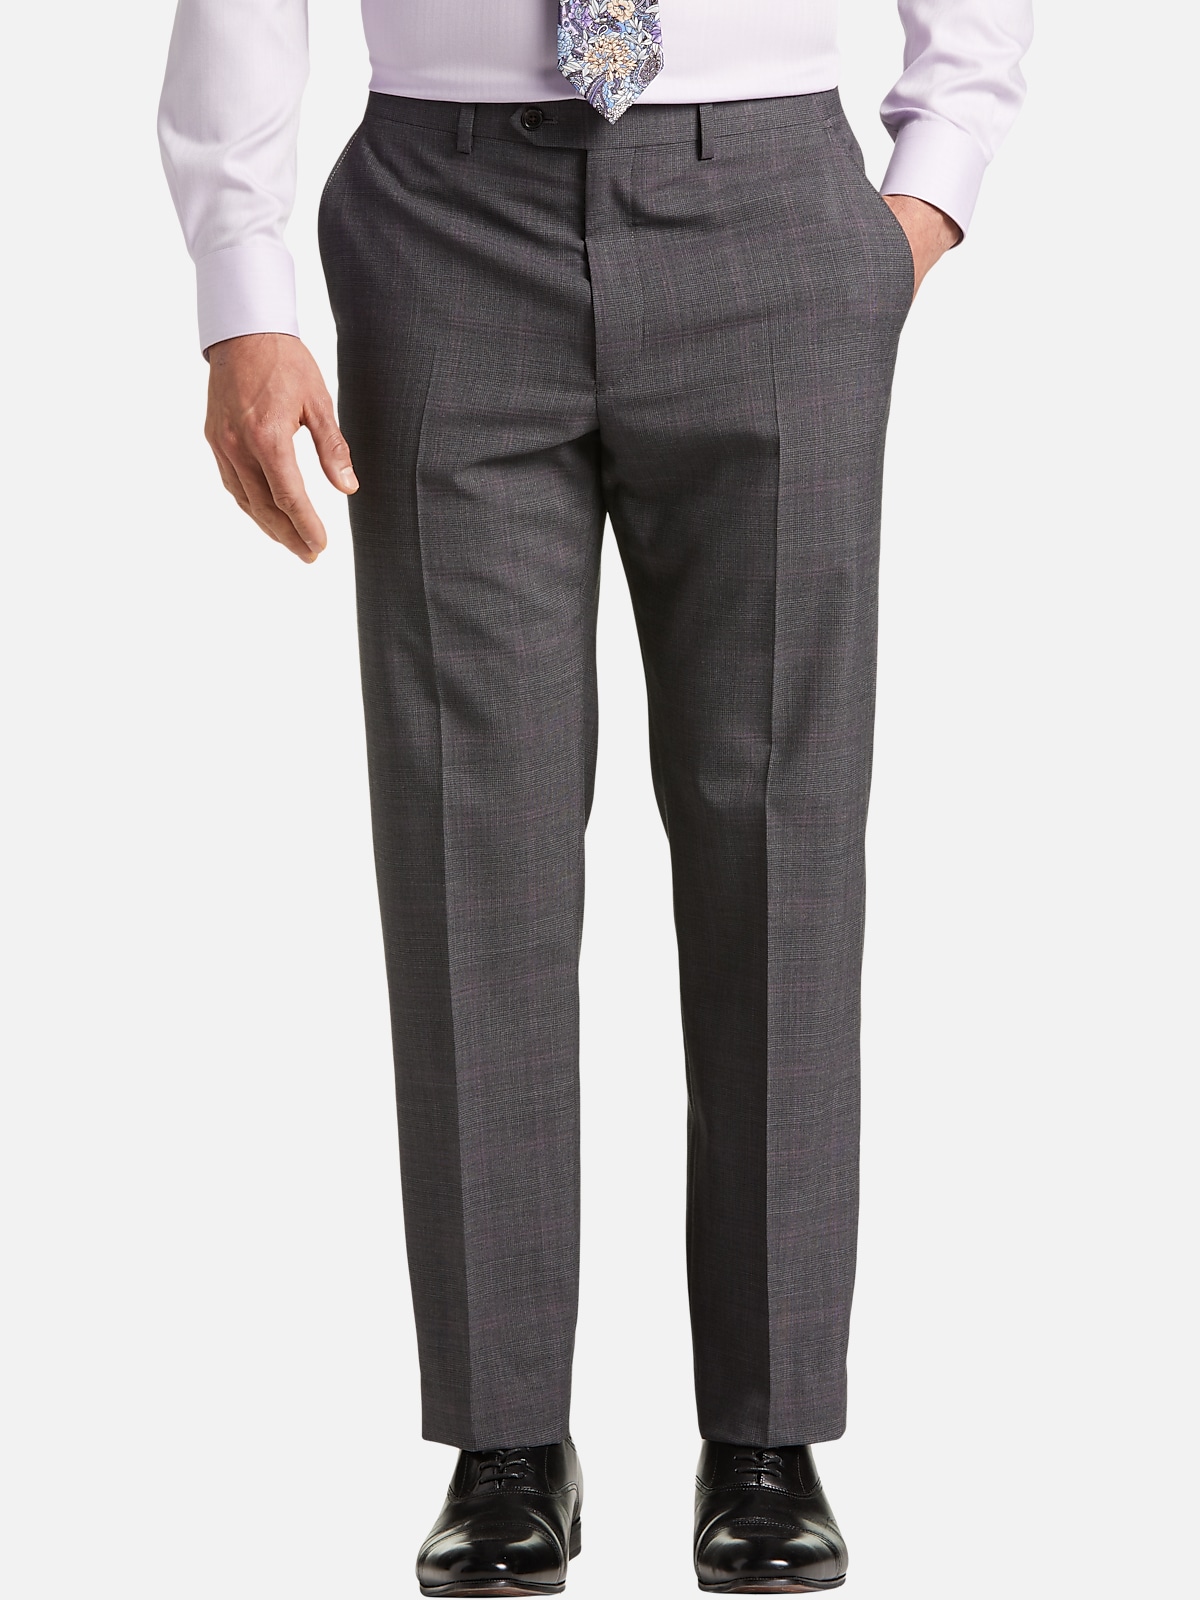 Lauren By Ralph Lauren Classic Fit Suit Separate Pants | Pants| Men's ...